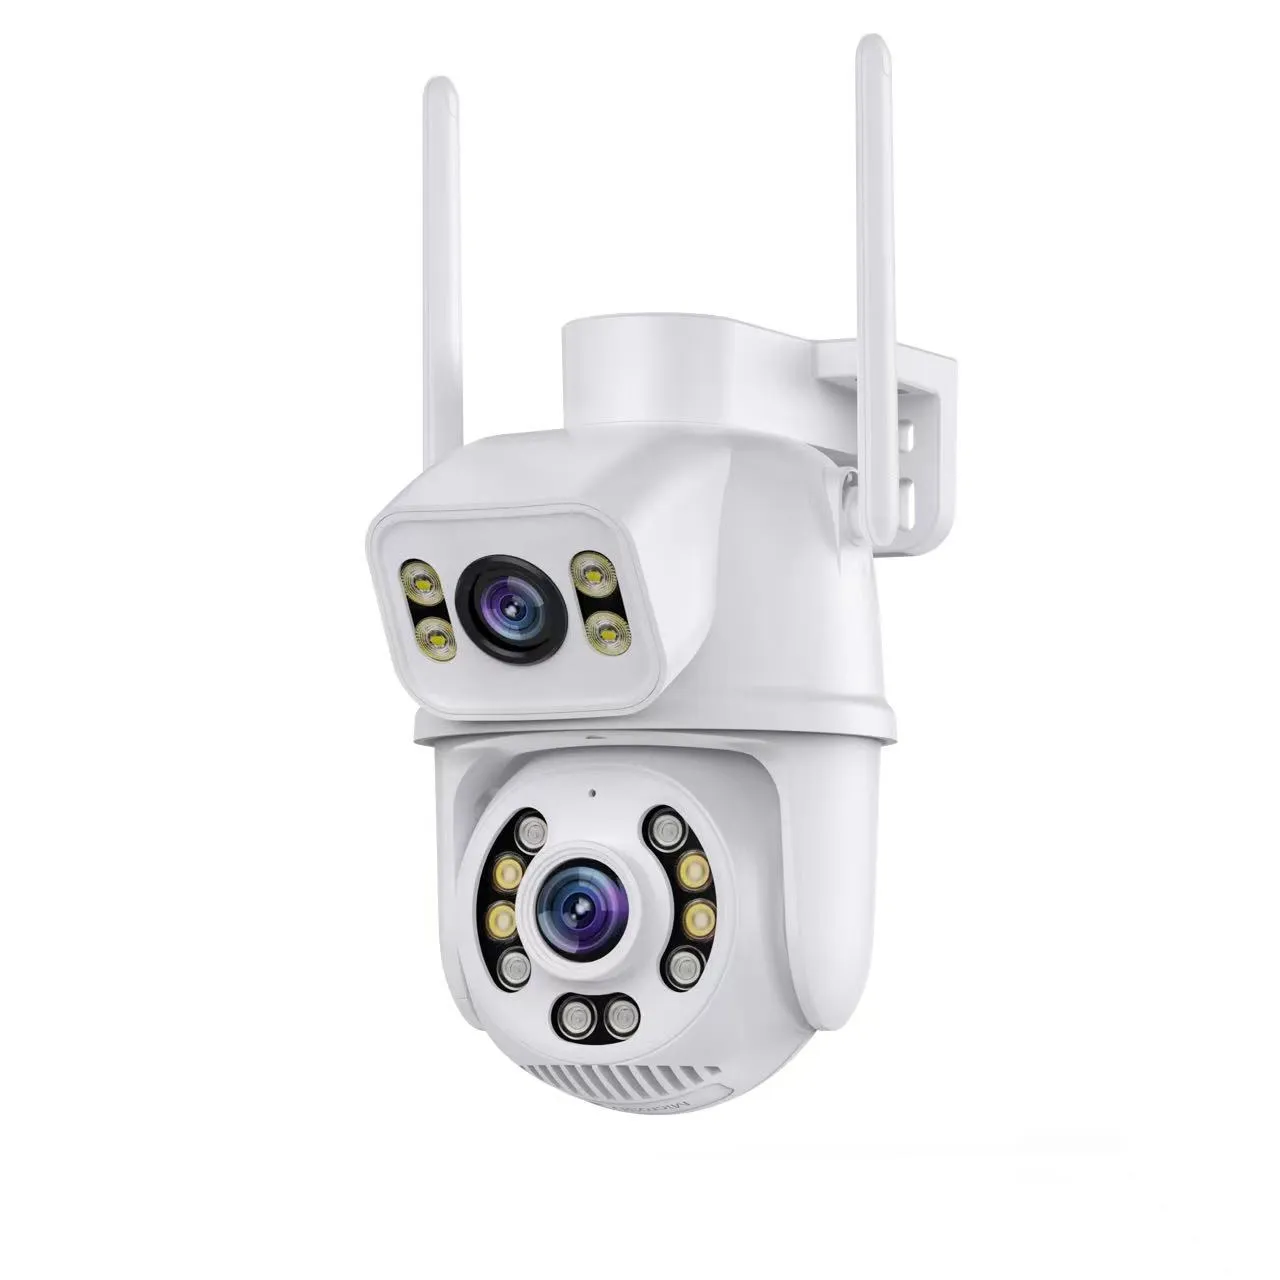 Doppia fotocamera 3MP obiettivo AI Autotracking telecamera di sorveglianza antintrusione umana per telecamera Wireless per visione notturna domestica